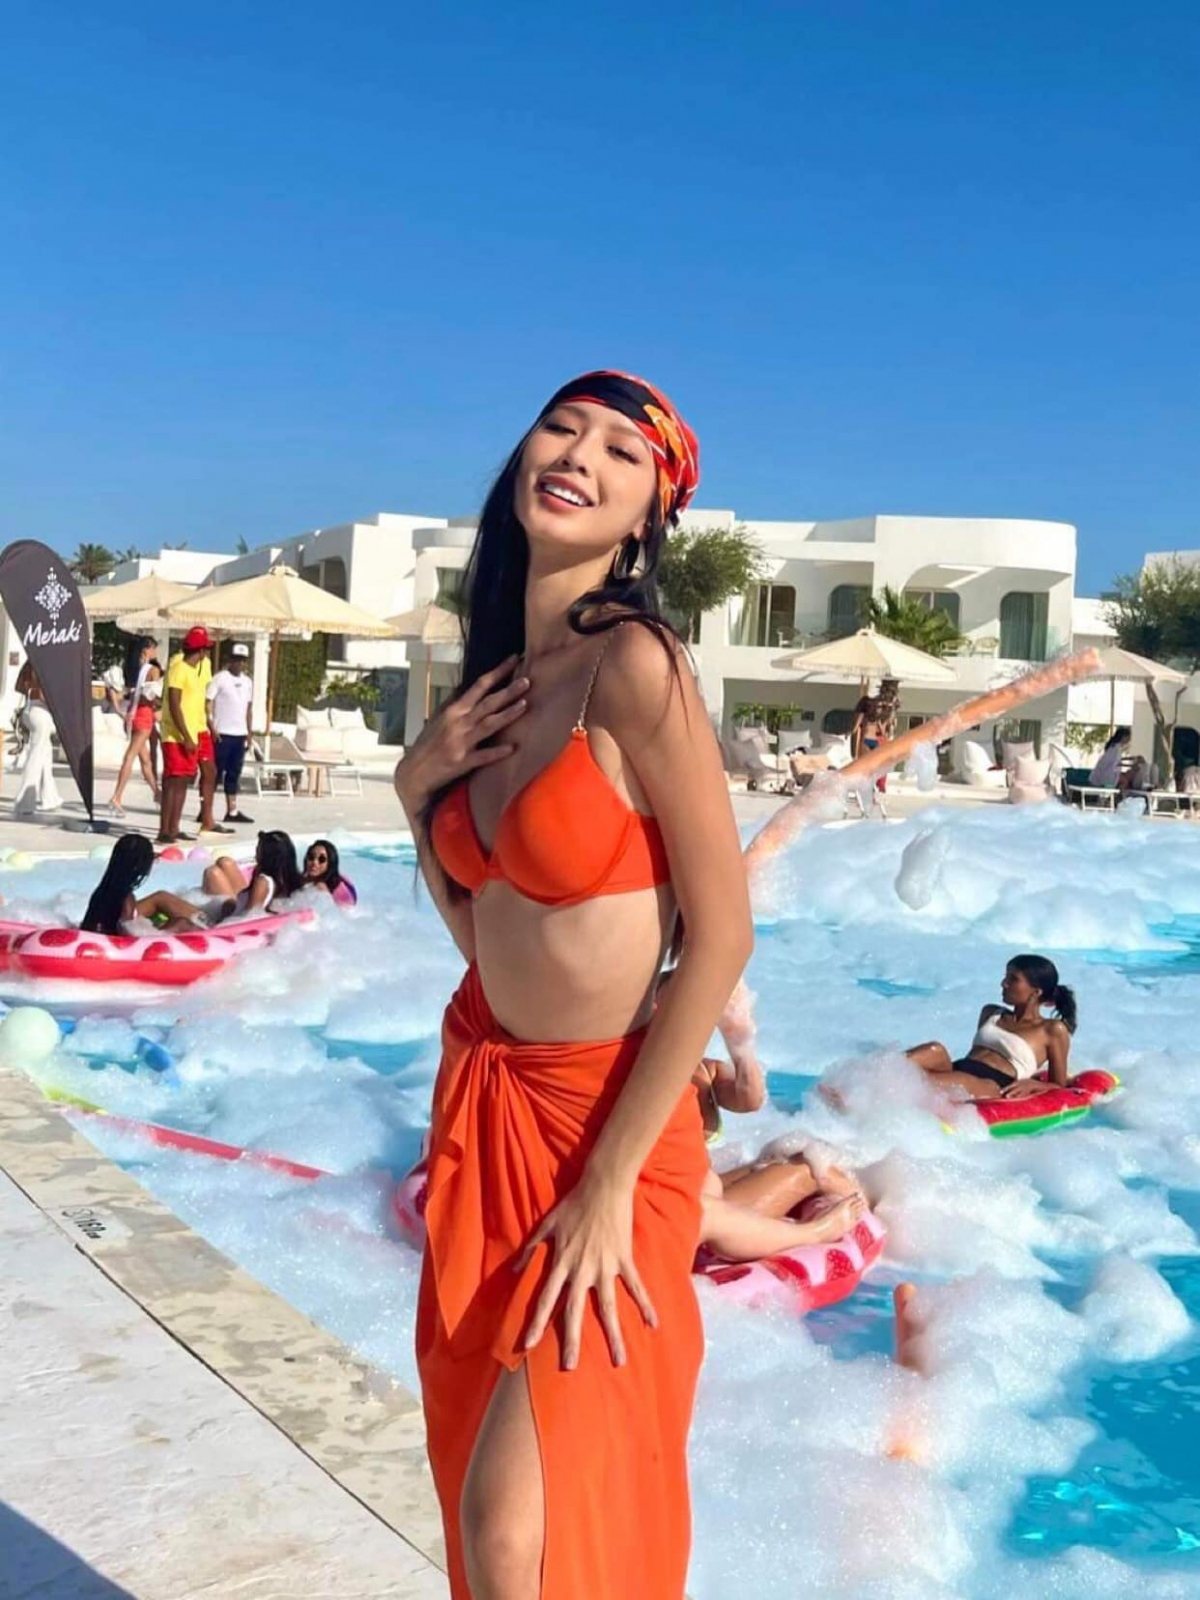 Á hậu Bảo Ngọc khoe sắc vóc quyến rũ với bikini bên bể bơi - Ảnh 2.